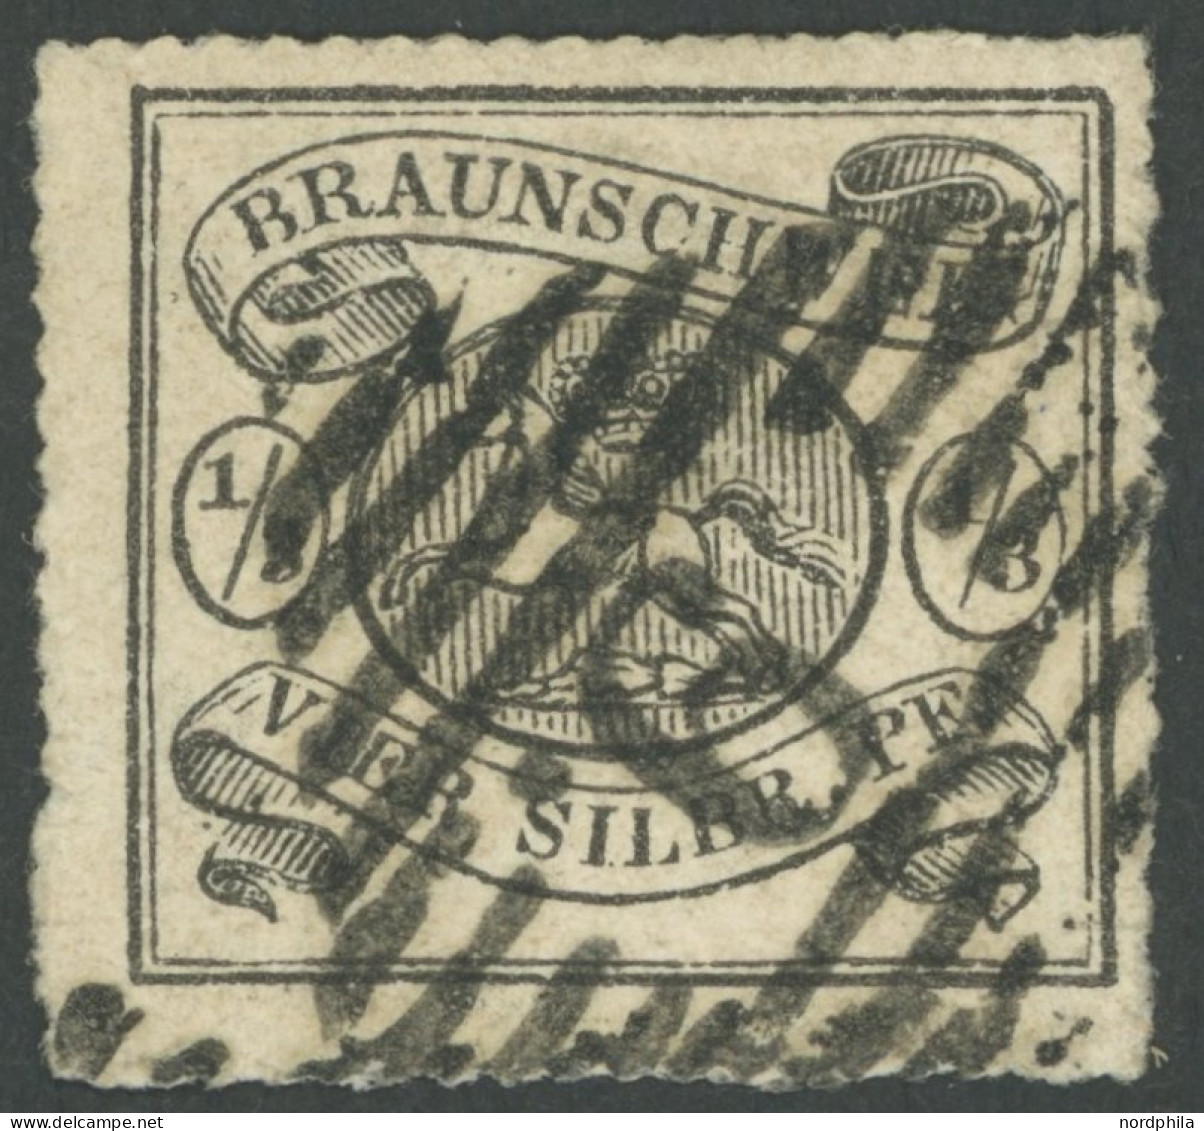 BRAUNSCHWEIG 13A O, 1864, 1/3 Sgr. Schwarz, Durchstich Nicht Ganz Perfekt Sonst Pracht, Gepr. Brettl, Mi. 2800.- - Braunschweig